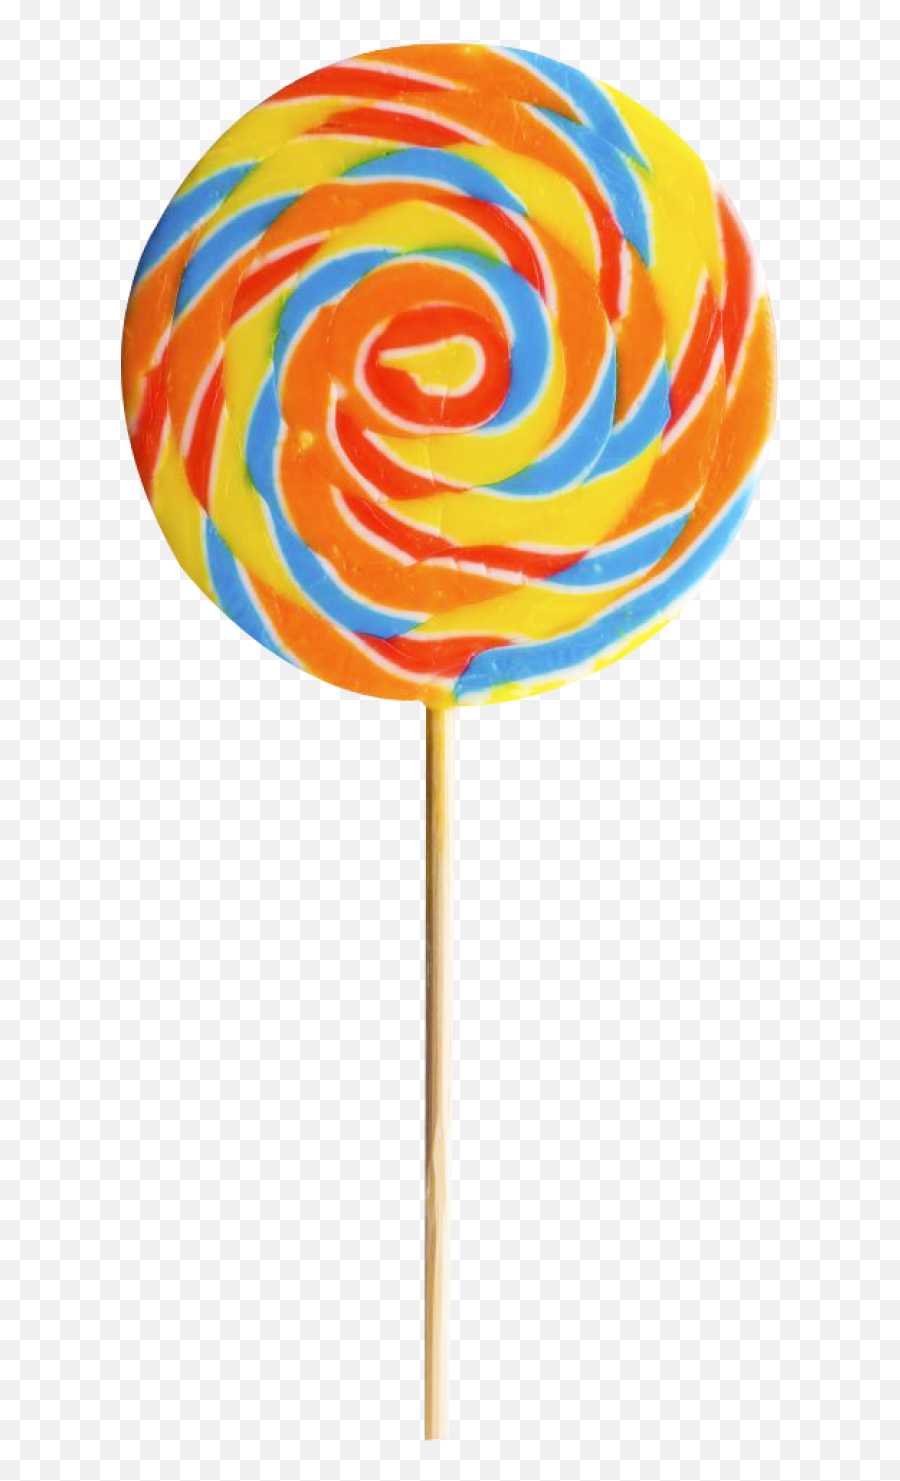 Lollipop Png Image - Lollipop Png,Lollipop Transparent